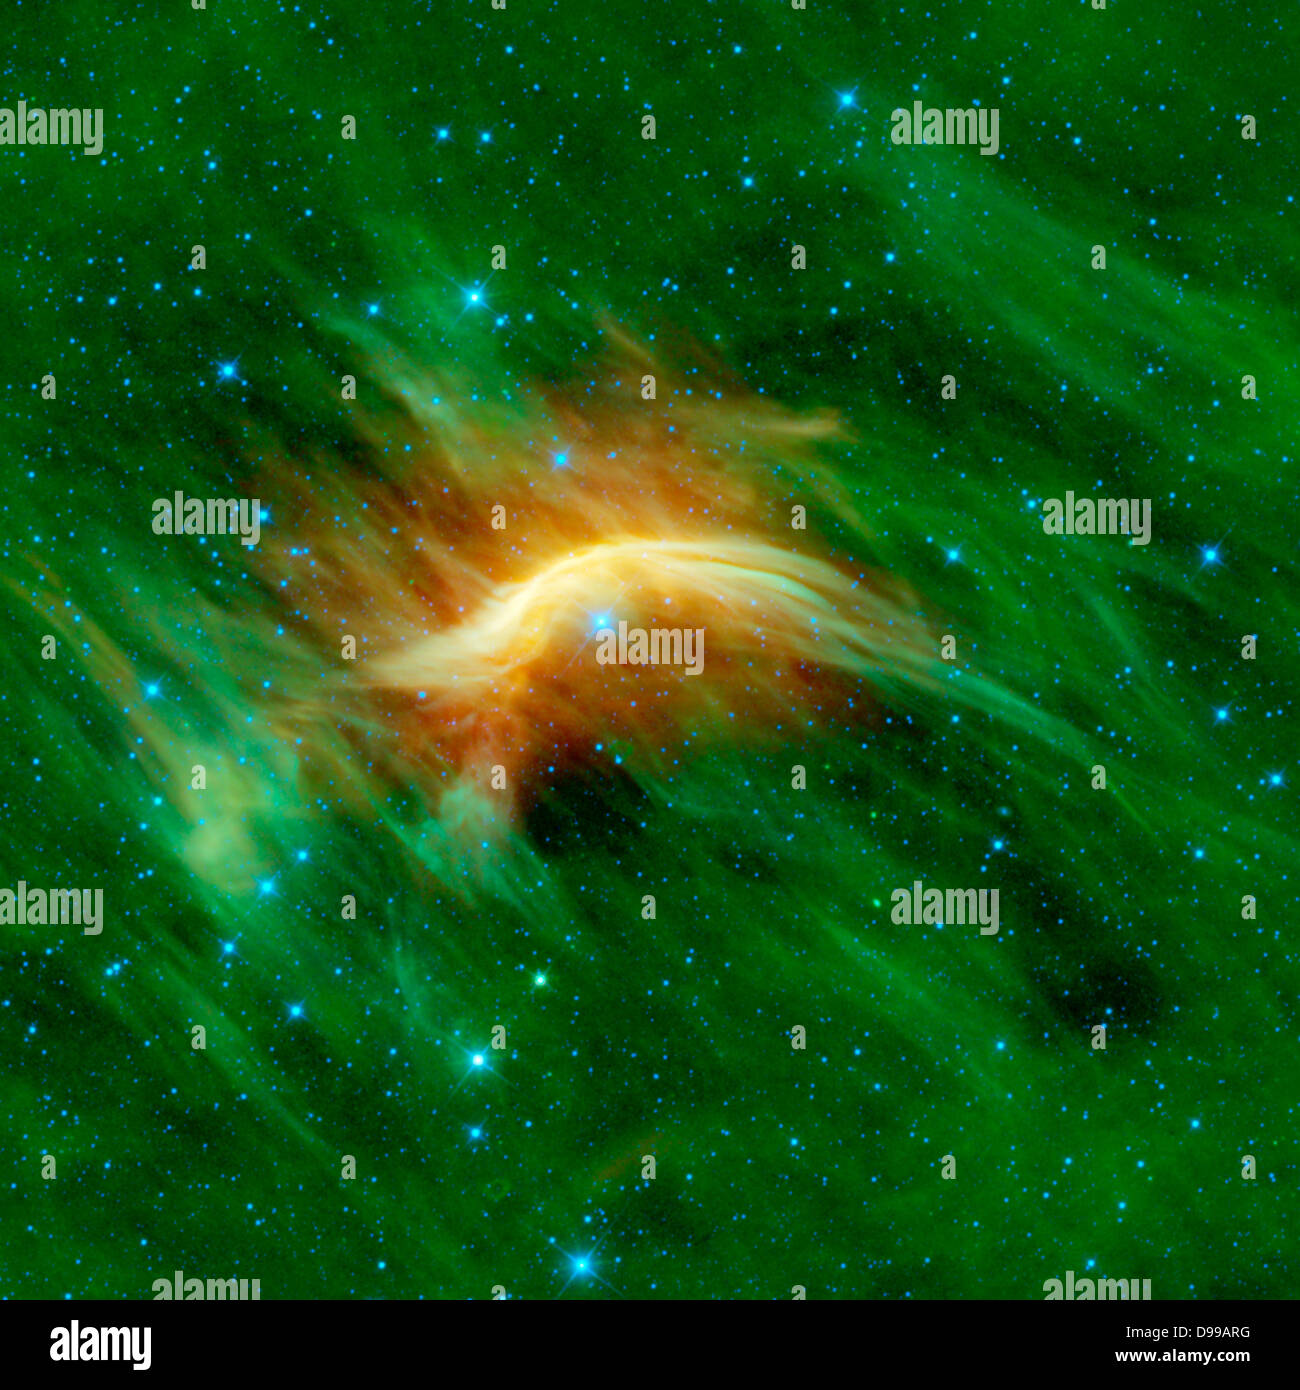 Il Blue star vicino al centro di questa immagine è Zeta Ophiuchi. Zeta Ophiuchi è in realtà molto massiccia, calde e luminose in blue star arando il suo modo attraverso una grande nuvola di polvere interstellare e gas. Saggi. Foto Stock